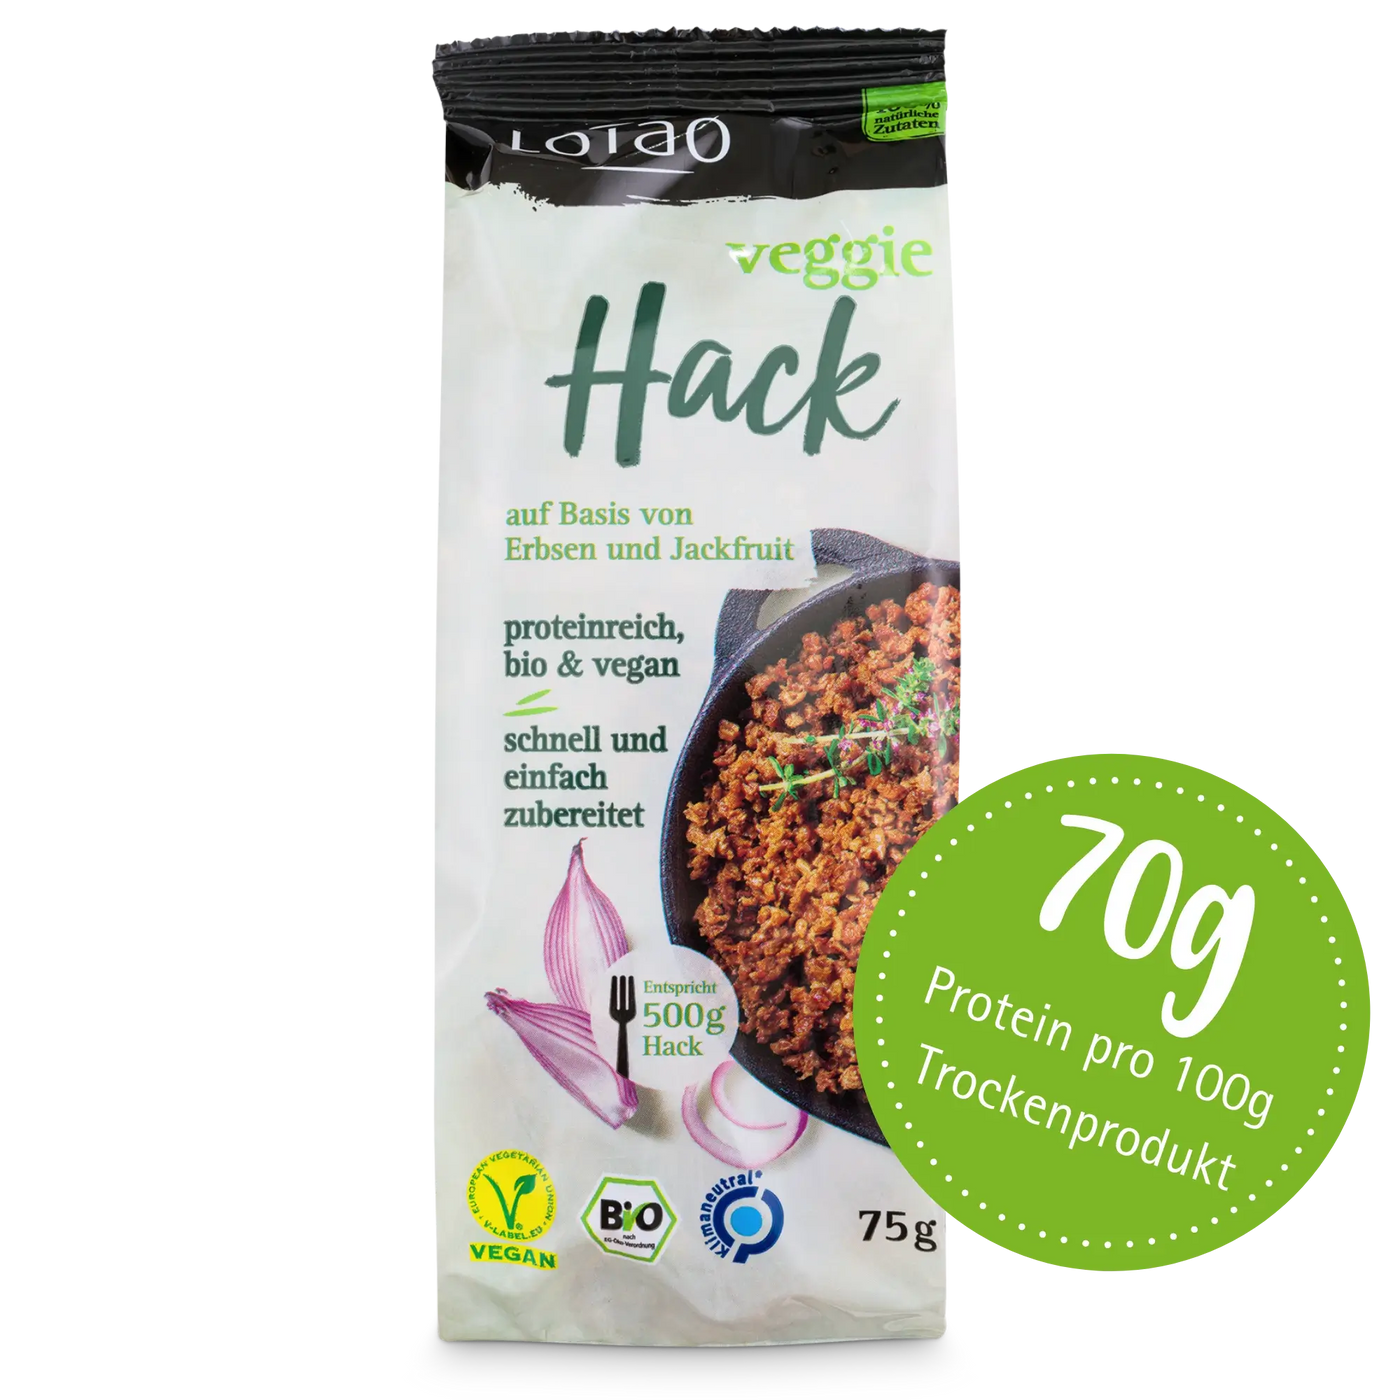 Bio-vegane Hackfleischalternative Veggie Hack von Lotao mit 70% Proteinanteil in der 75g Packung